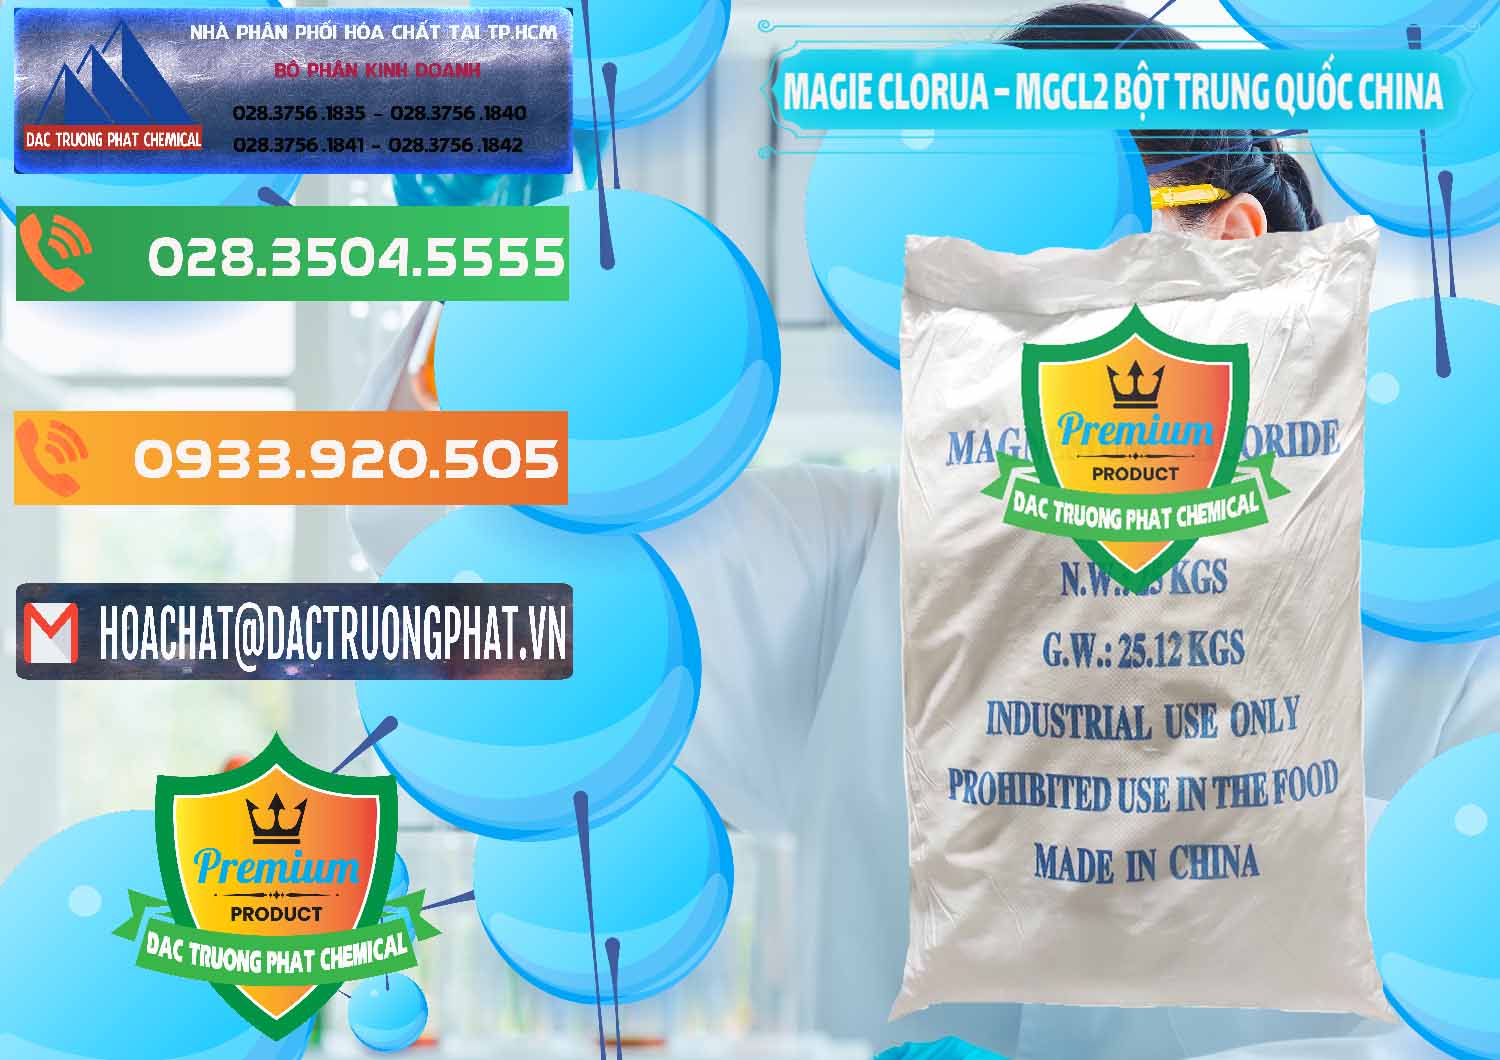 Đơn vị cung ứng - bán Magie Clorua – MGCL2 96% Dạng Bột Bao Chữ Xanh Trung Quốc China - 0207 - Cty cung cấp và bán hóa chất tại TP.HCM - hoachatxulynuoc.com.vn